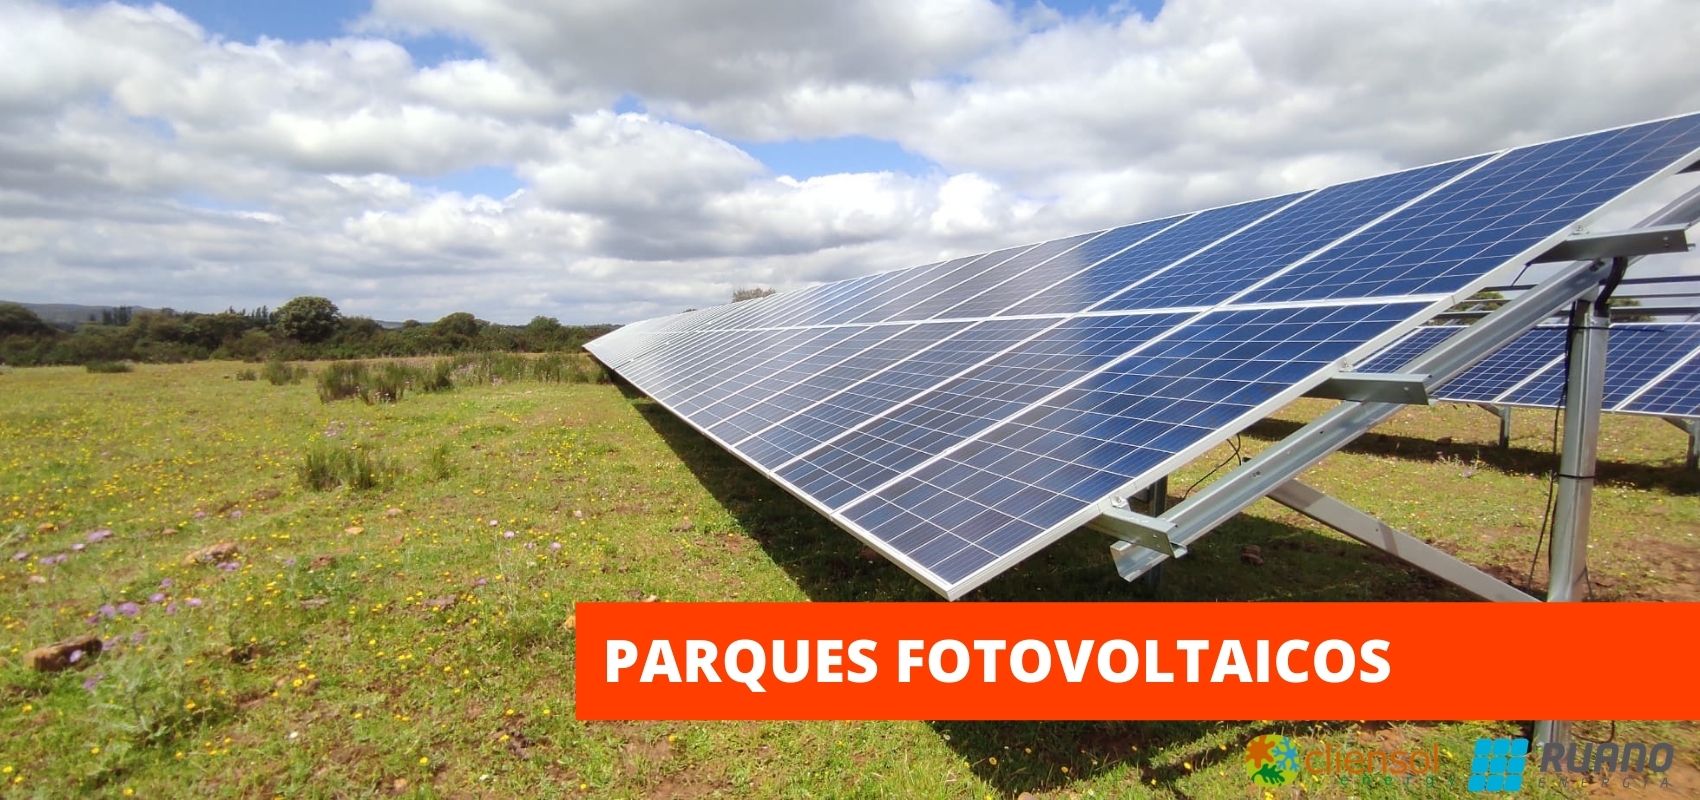 soluciones de fotovoltaica y intalaciones solares para parques fotovoltaicos